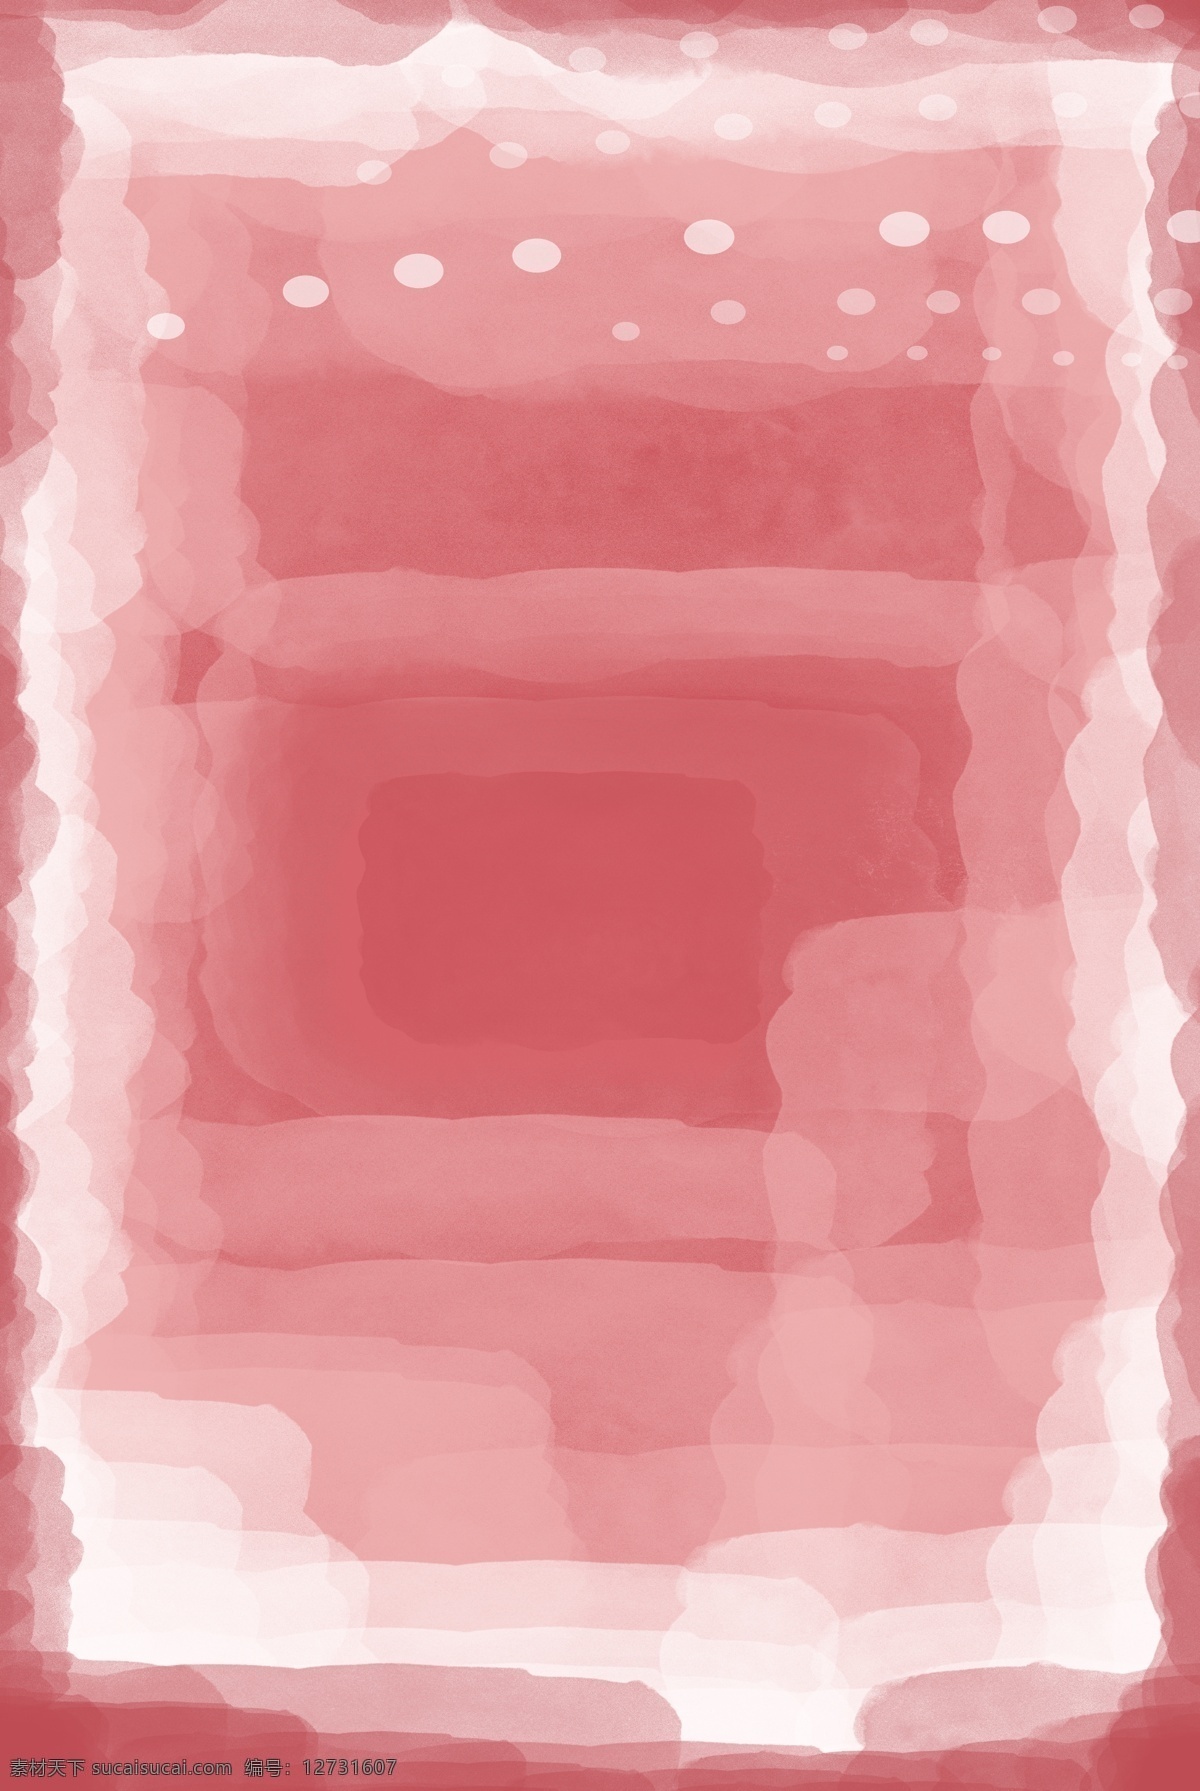 暖色调 渐变 水彩 透明 色块 背景 暖色 浪漫 温馨 空间 红色 粉色 清新